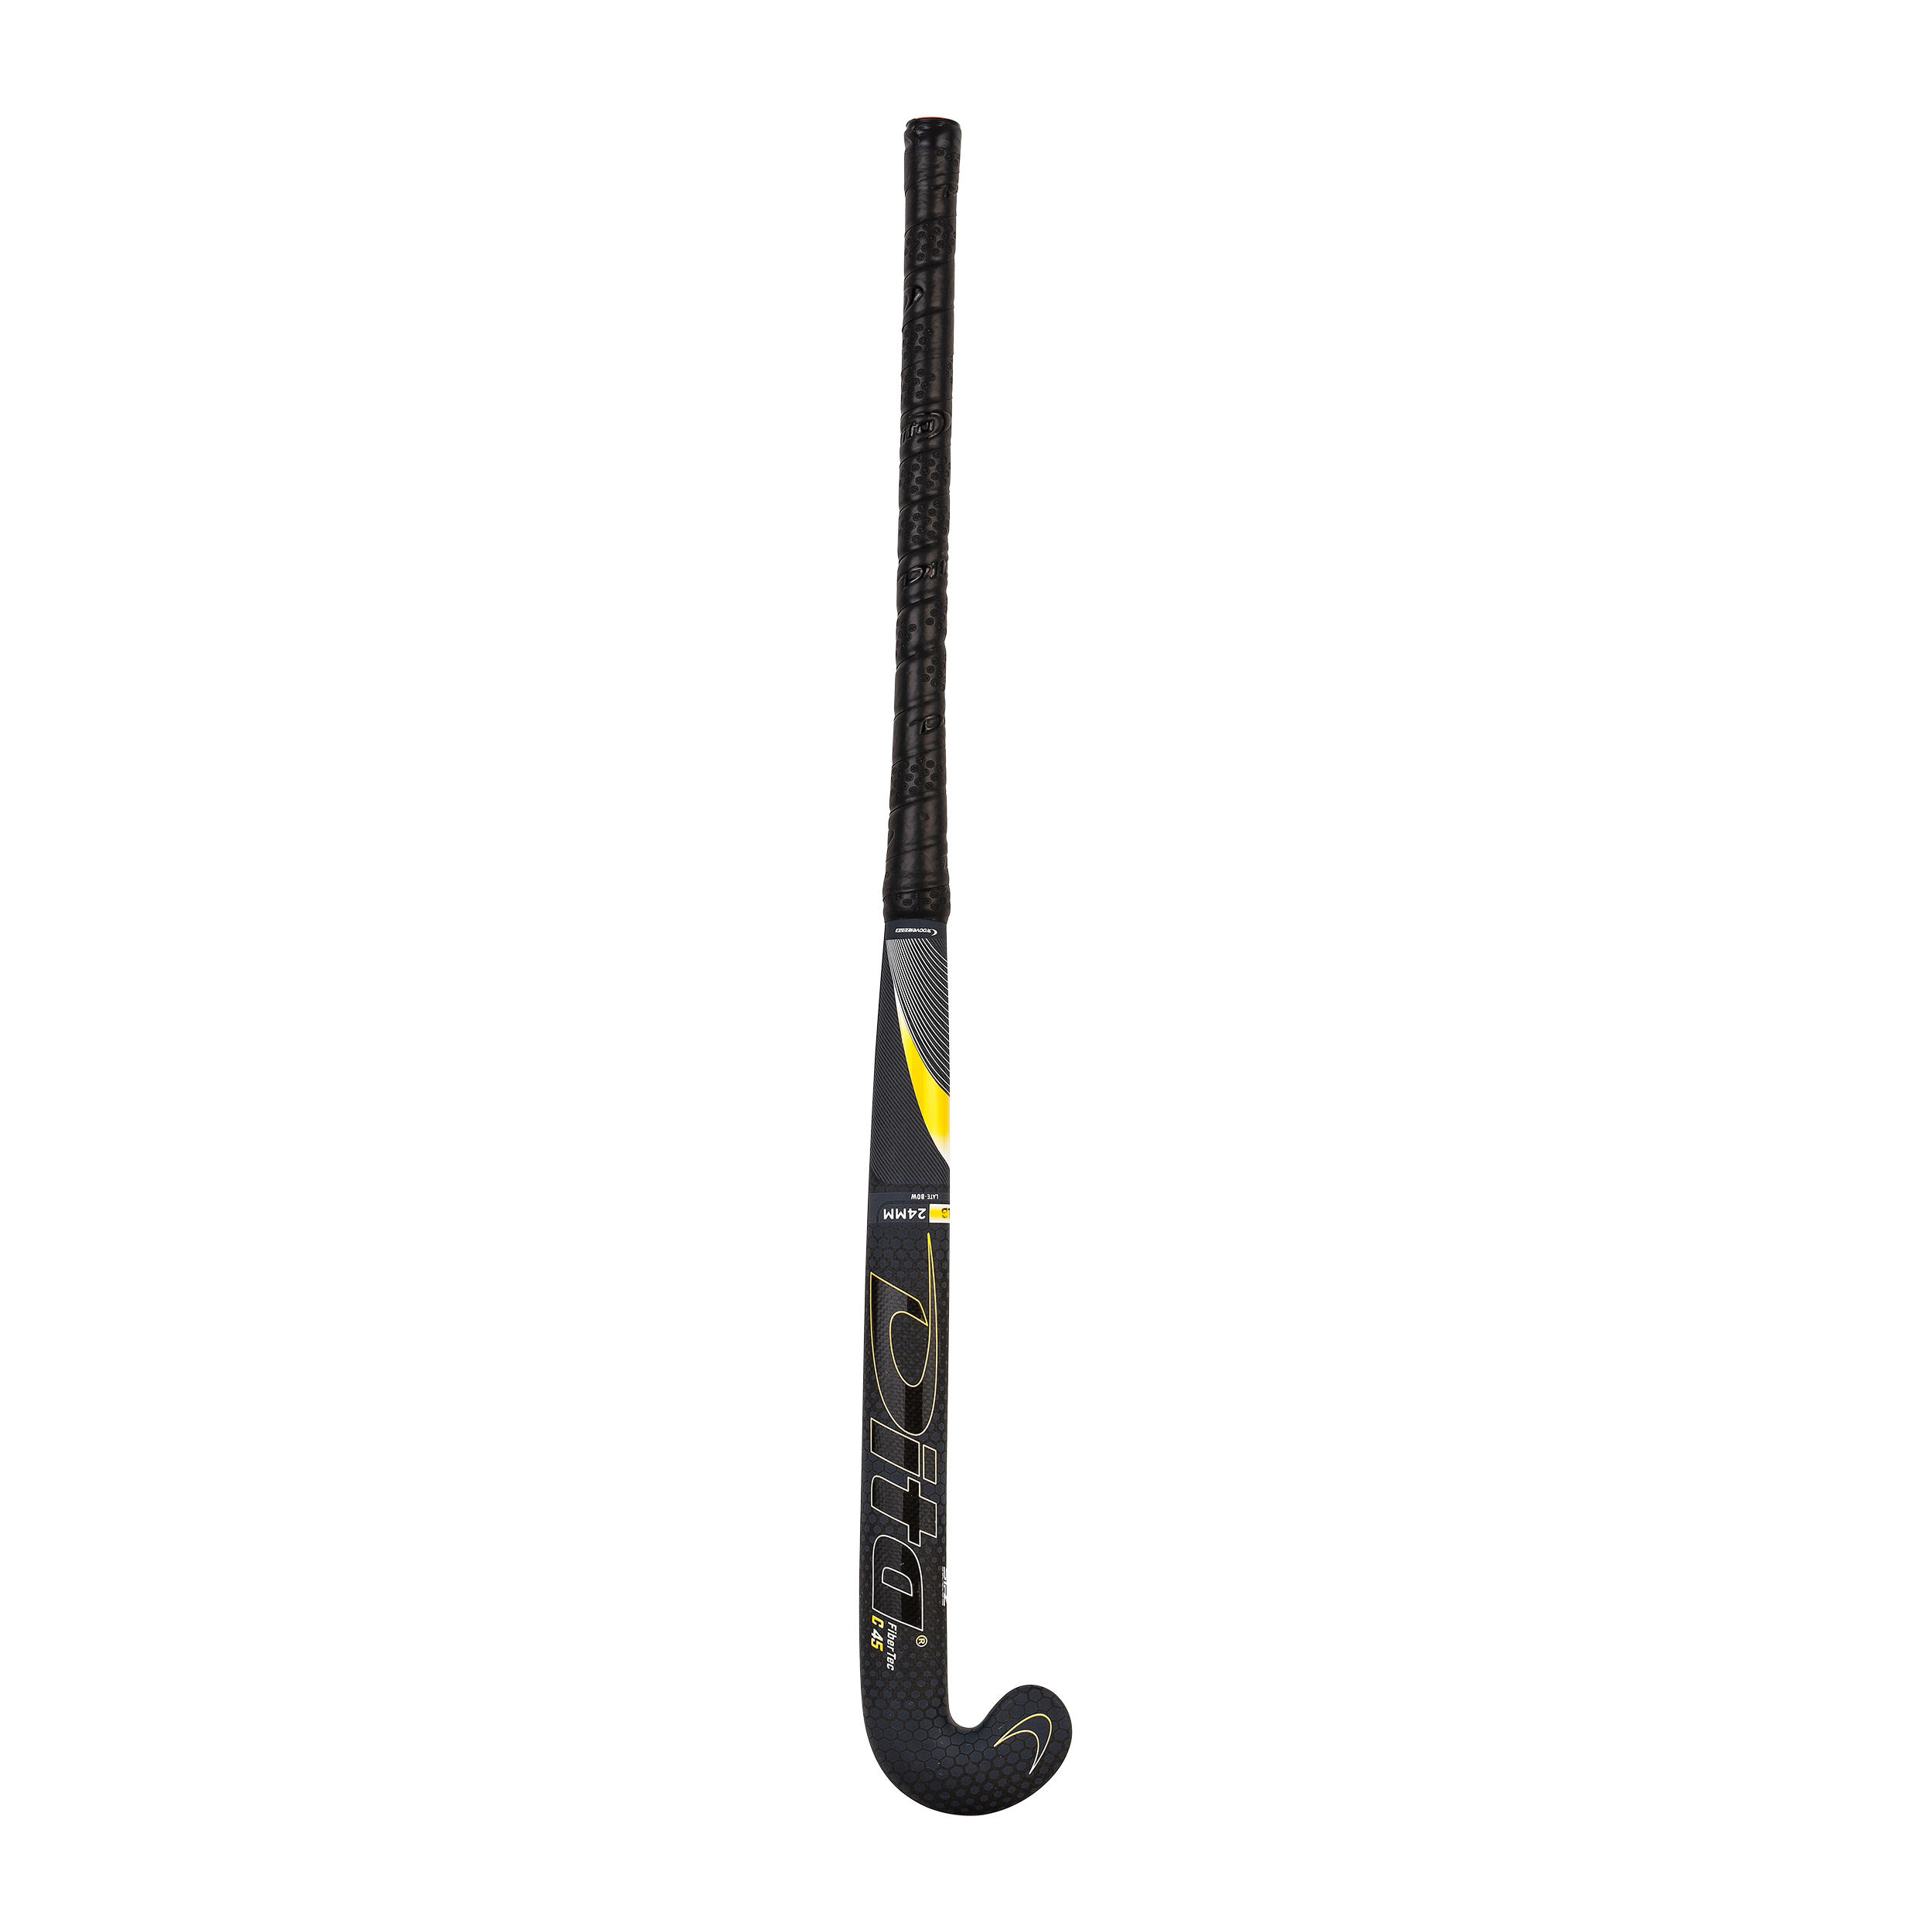 Adult Intermediate 45% Carbon Low Bow Field Hockey Stick FiberTec - Black/Gold 7/12